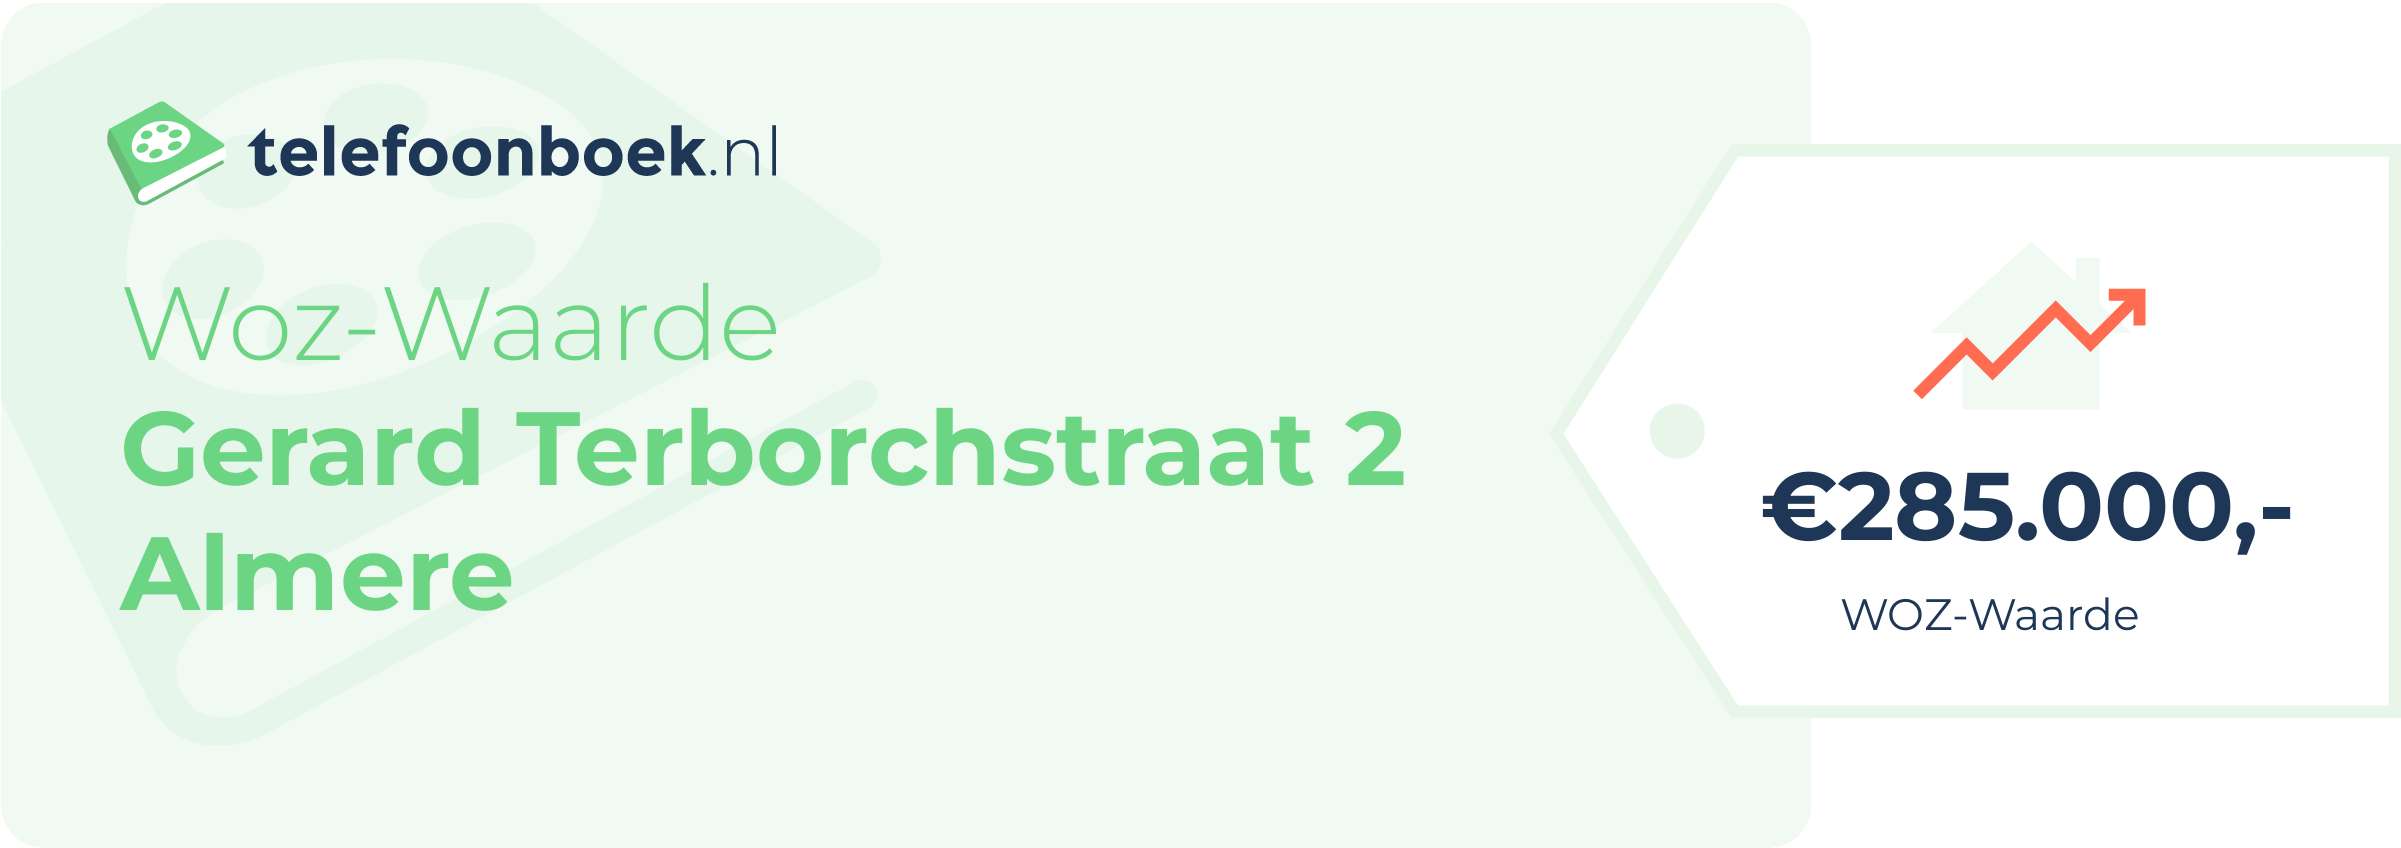 WOZ-waarde Gerard Terborchstraat 2 Almere